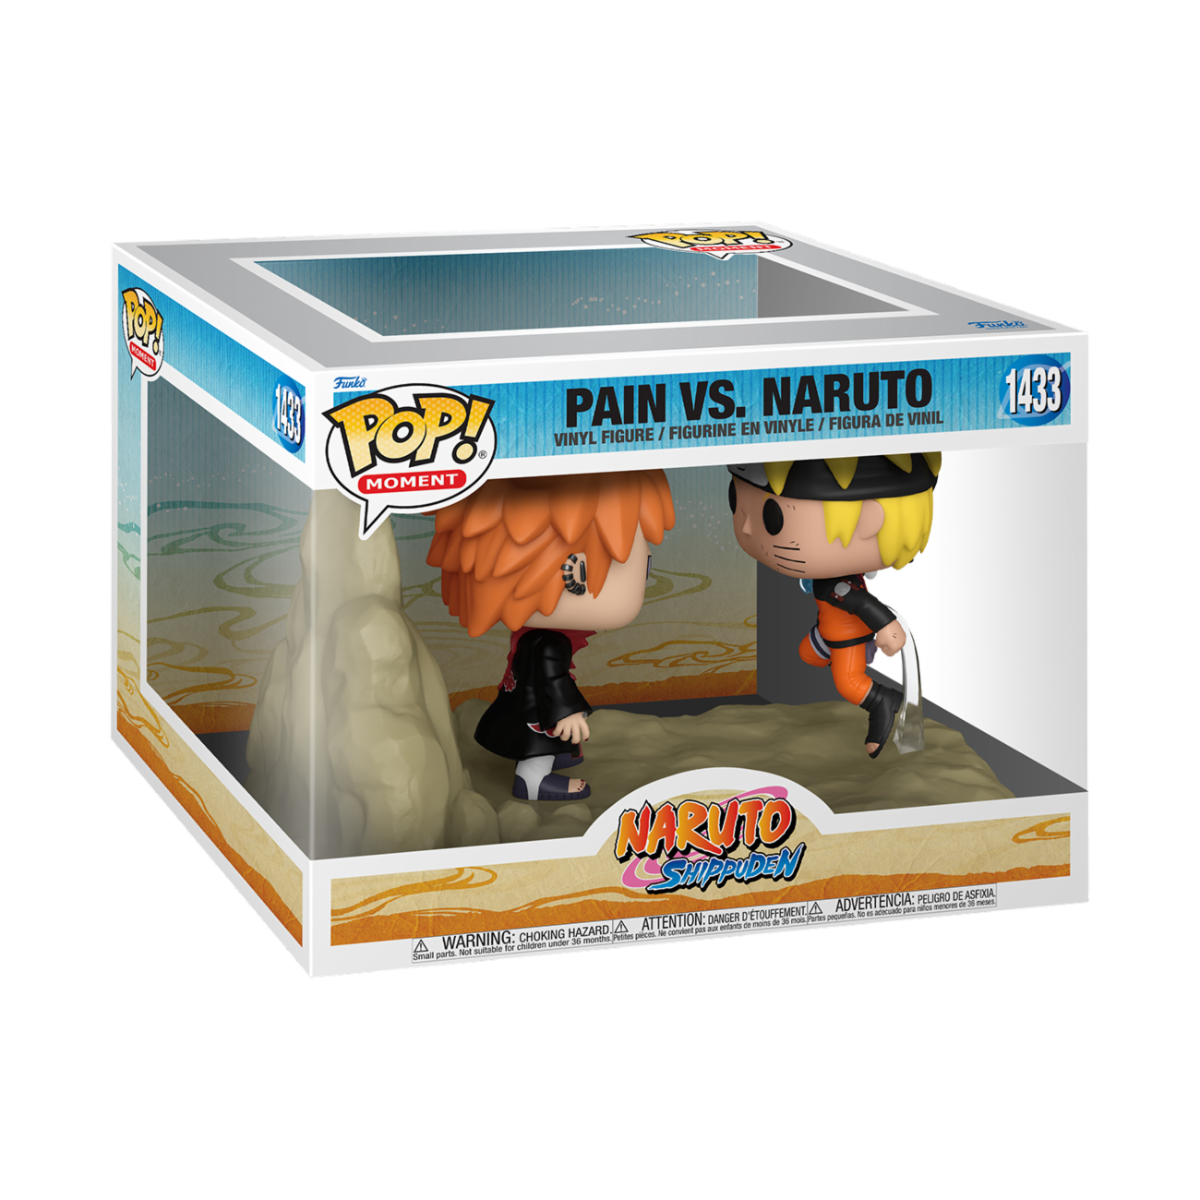 Naruto - POP Moment Pain v Naruto *Caixa Danificada*